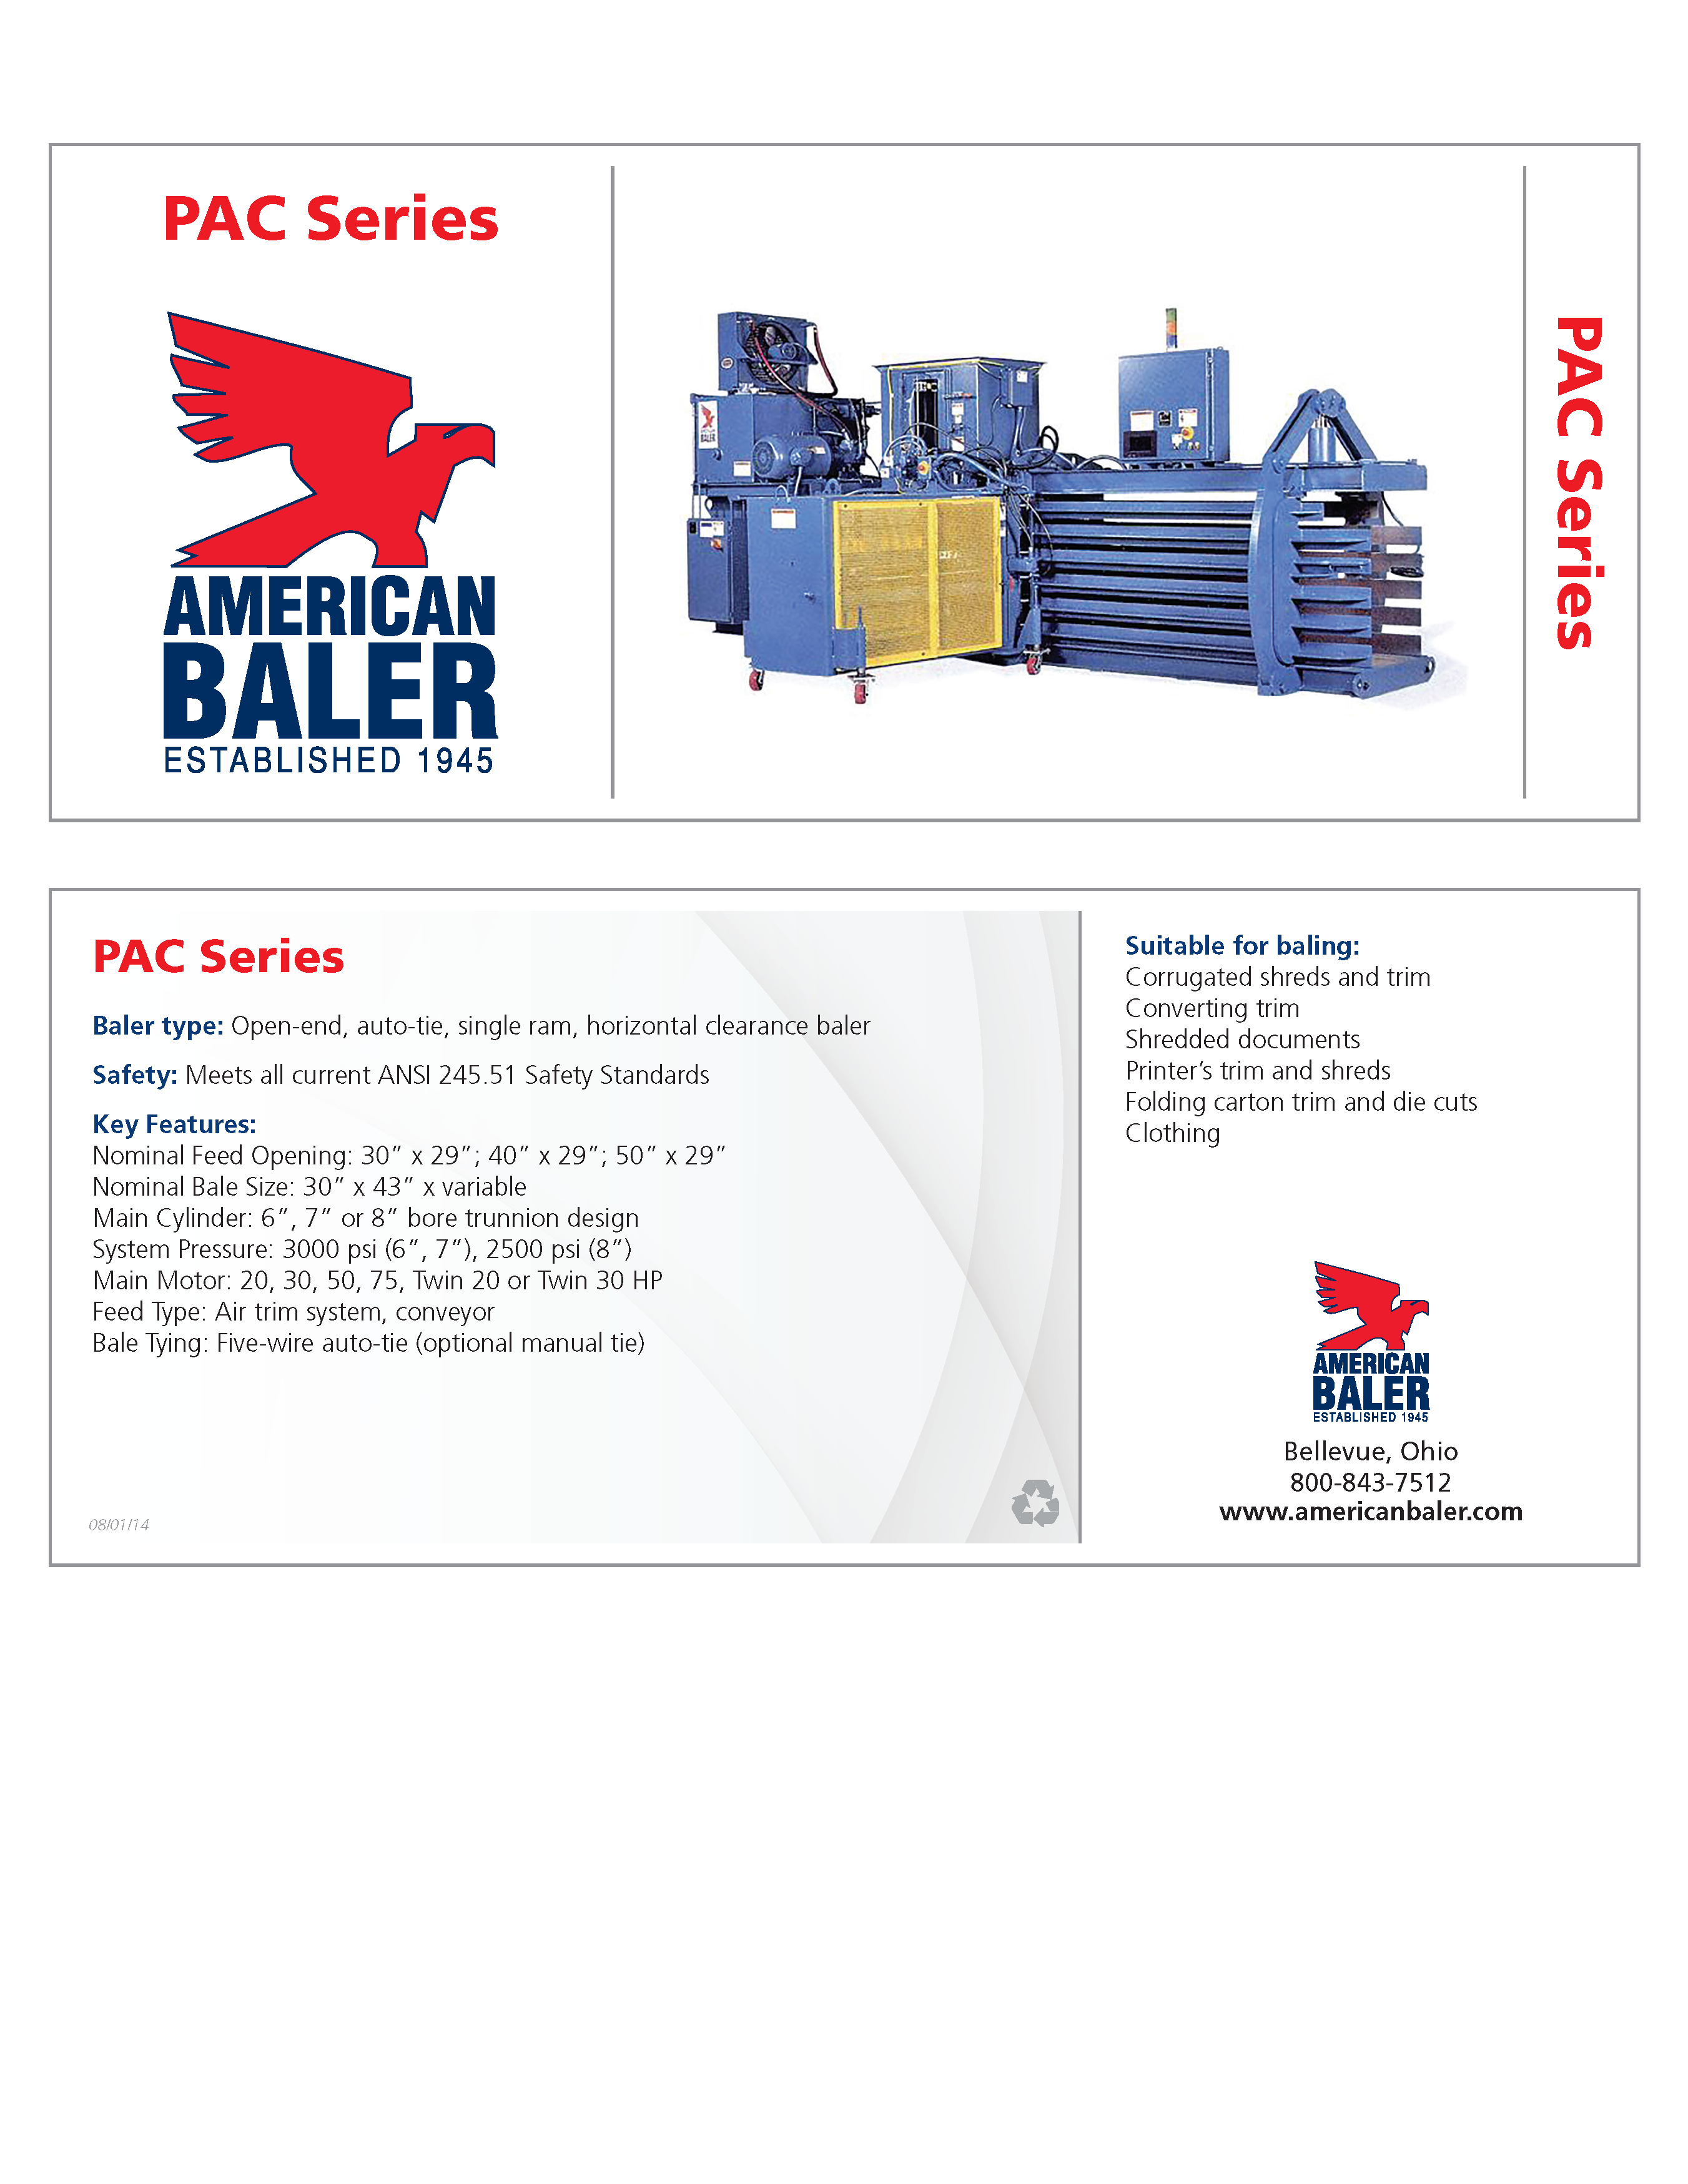 Conozca más acerca de la compactadora Serie PAC en el folleto de American Baler. 